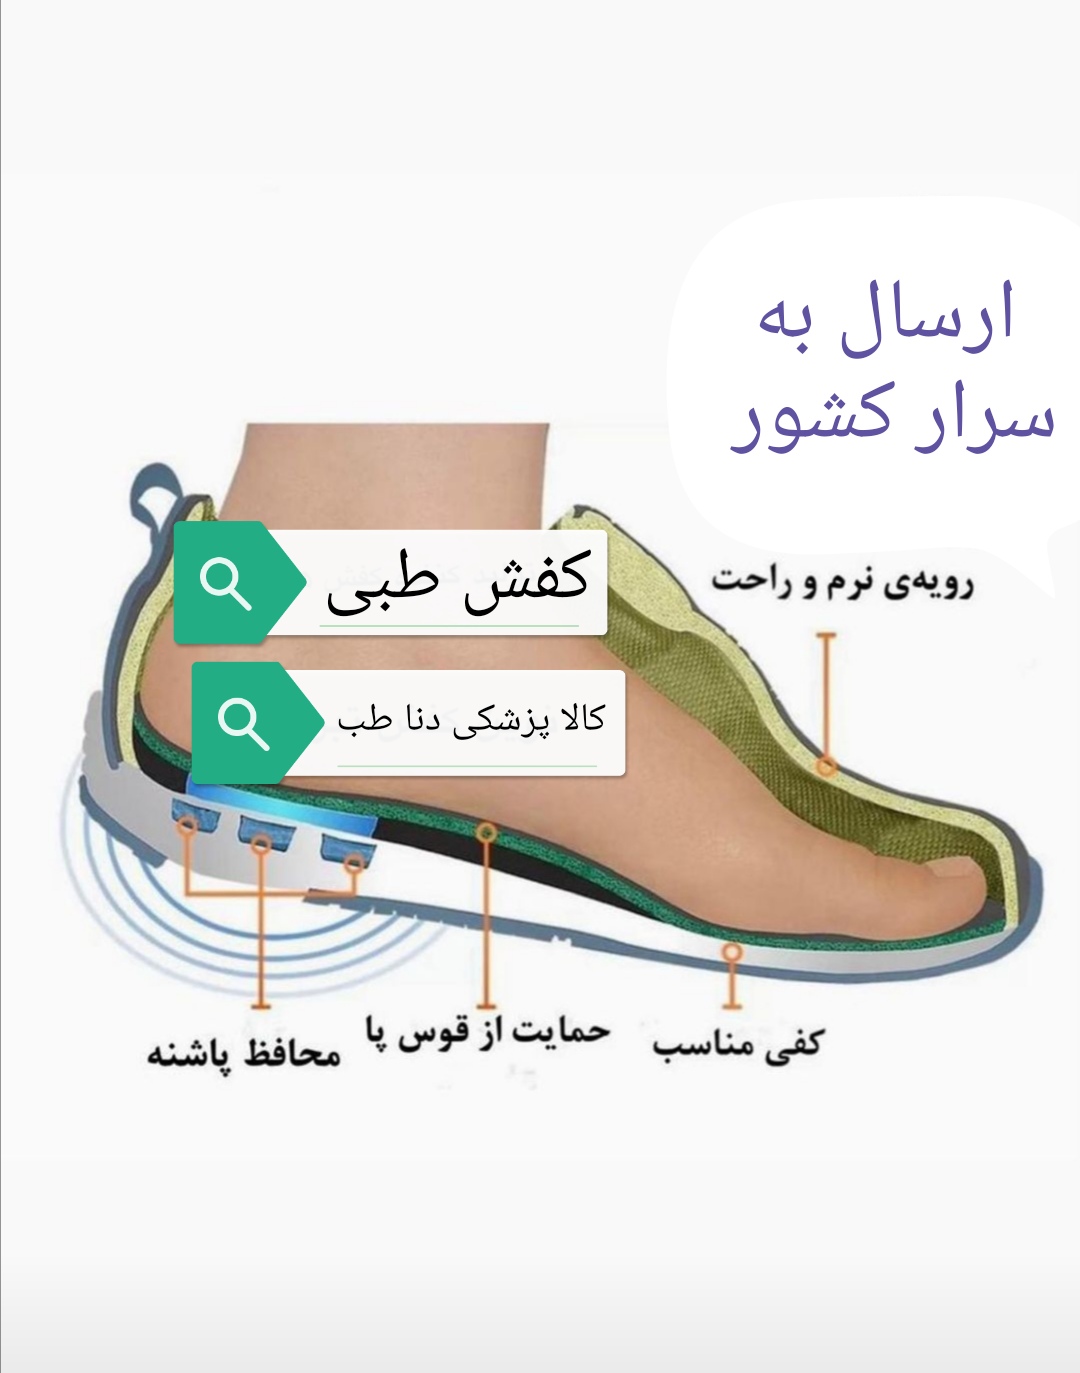 کفش طبی راحتی تمام چرم مردانه نوین چرم تبریز مدل اسپورت رونیز مخصوص پیاده روی و مجلسی